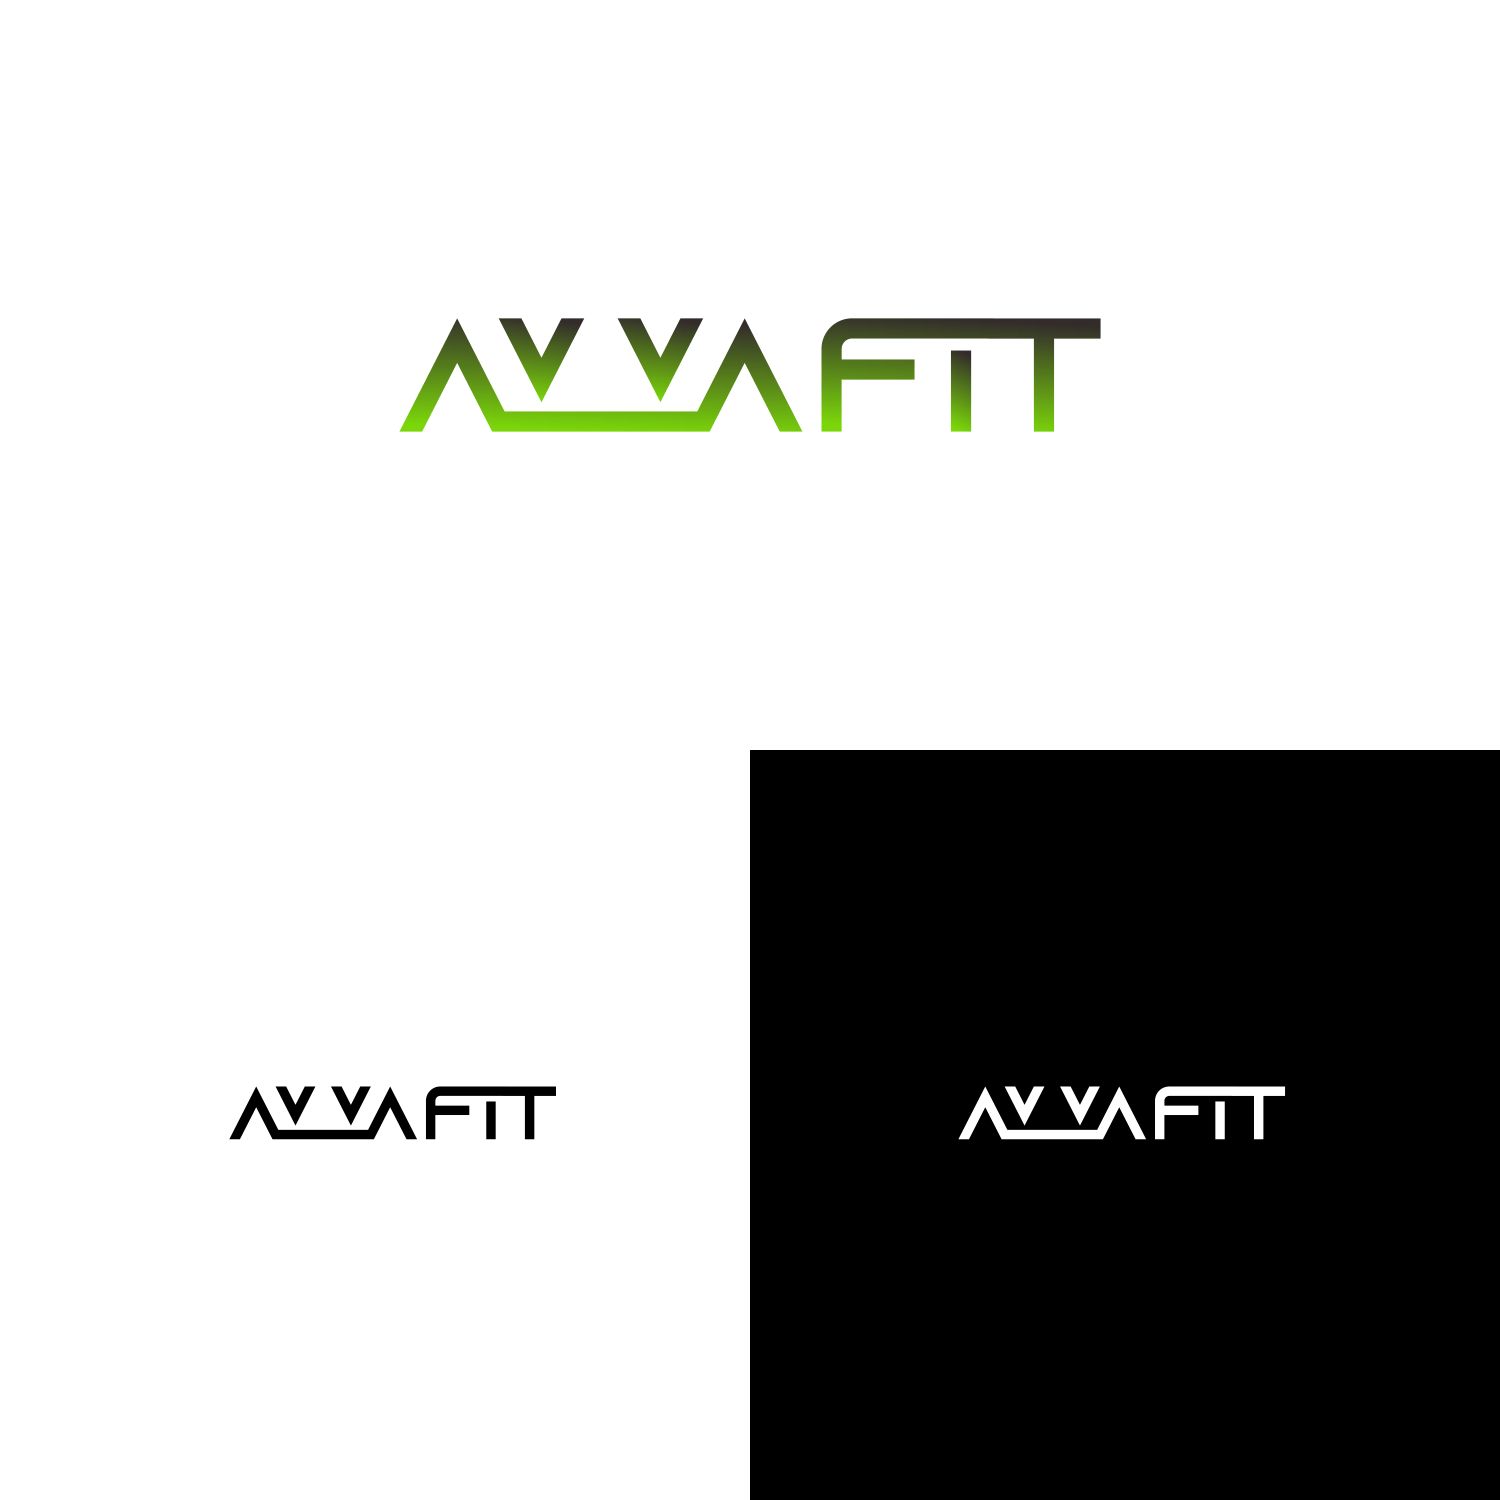 Avva Logo - Logo Design for AVVA FIT by modalbawang. Design